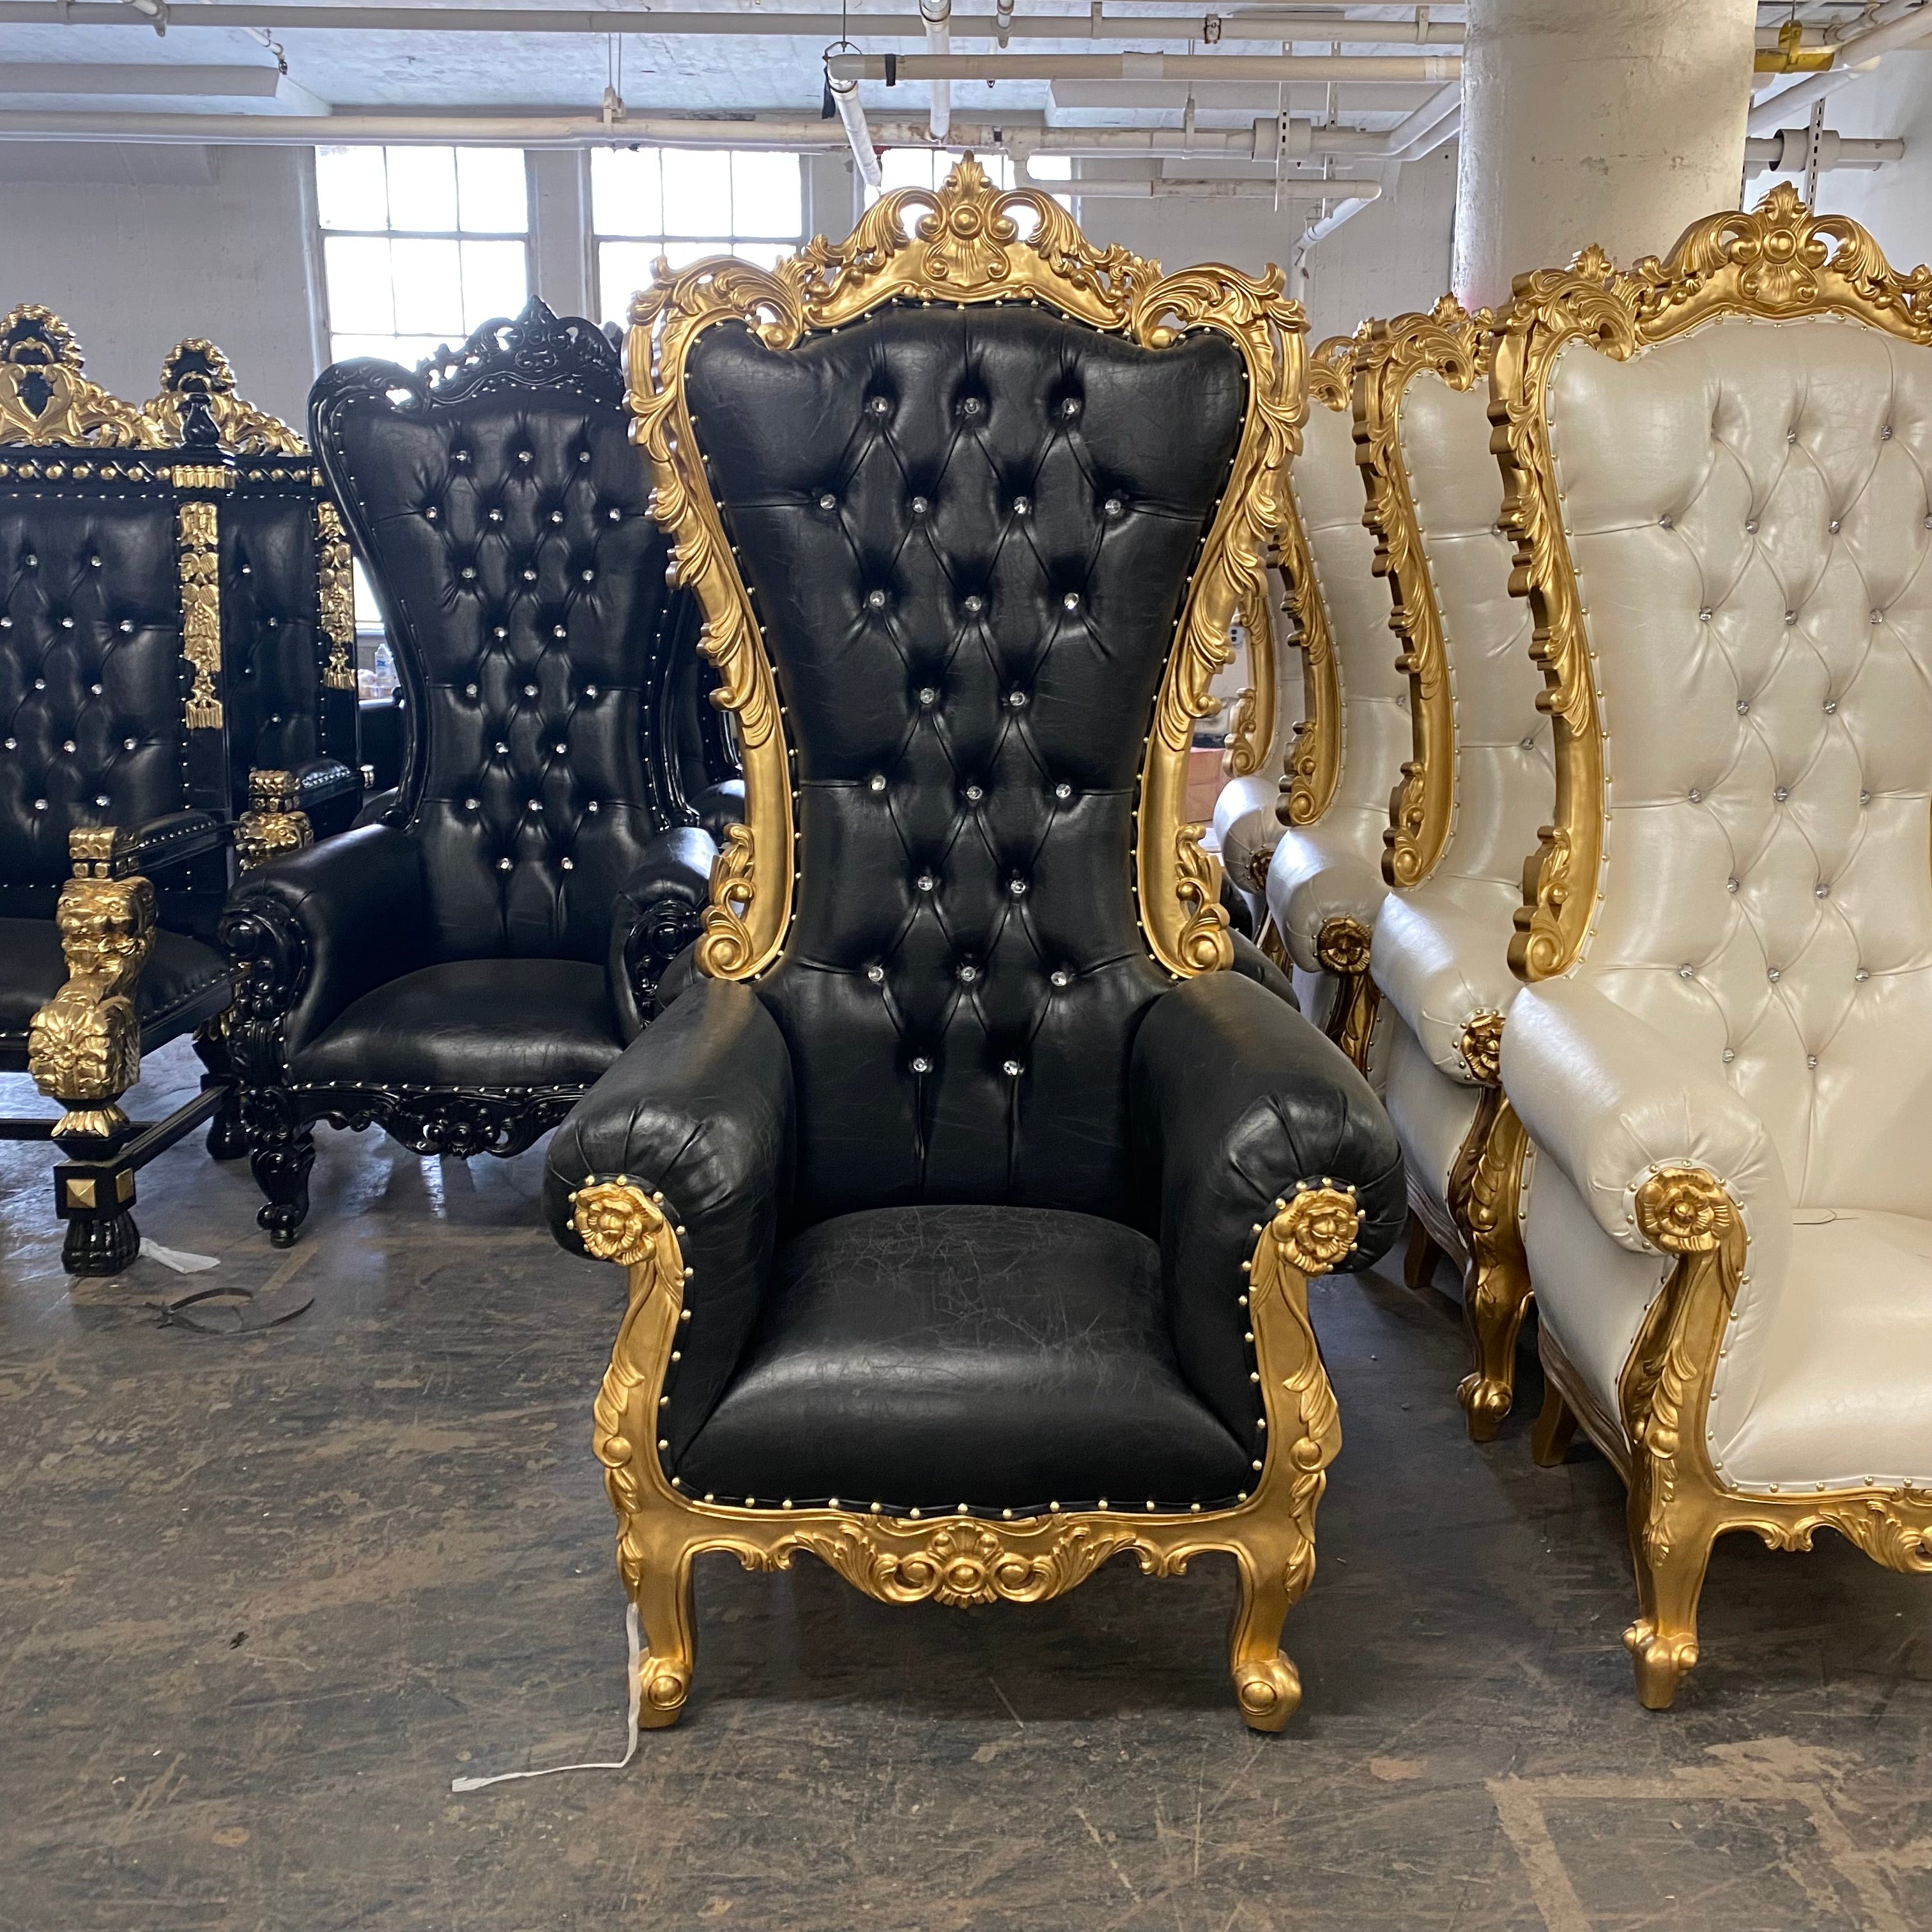 Queen Throne Chair 